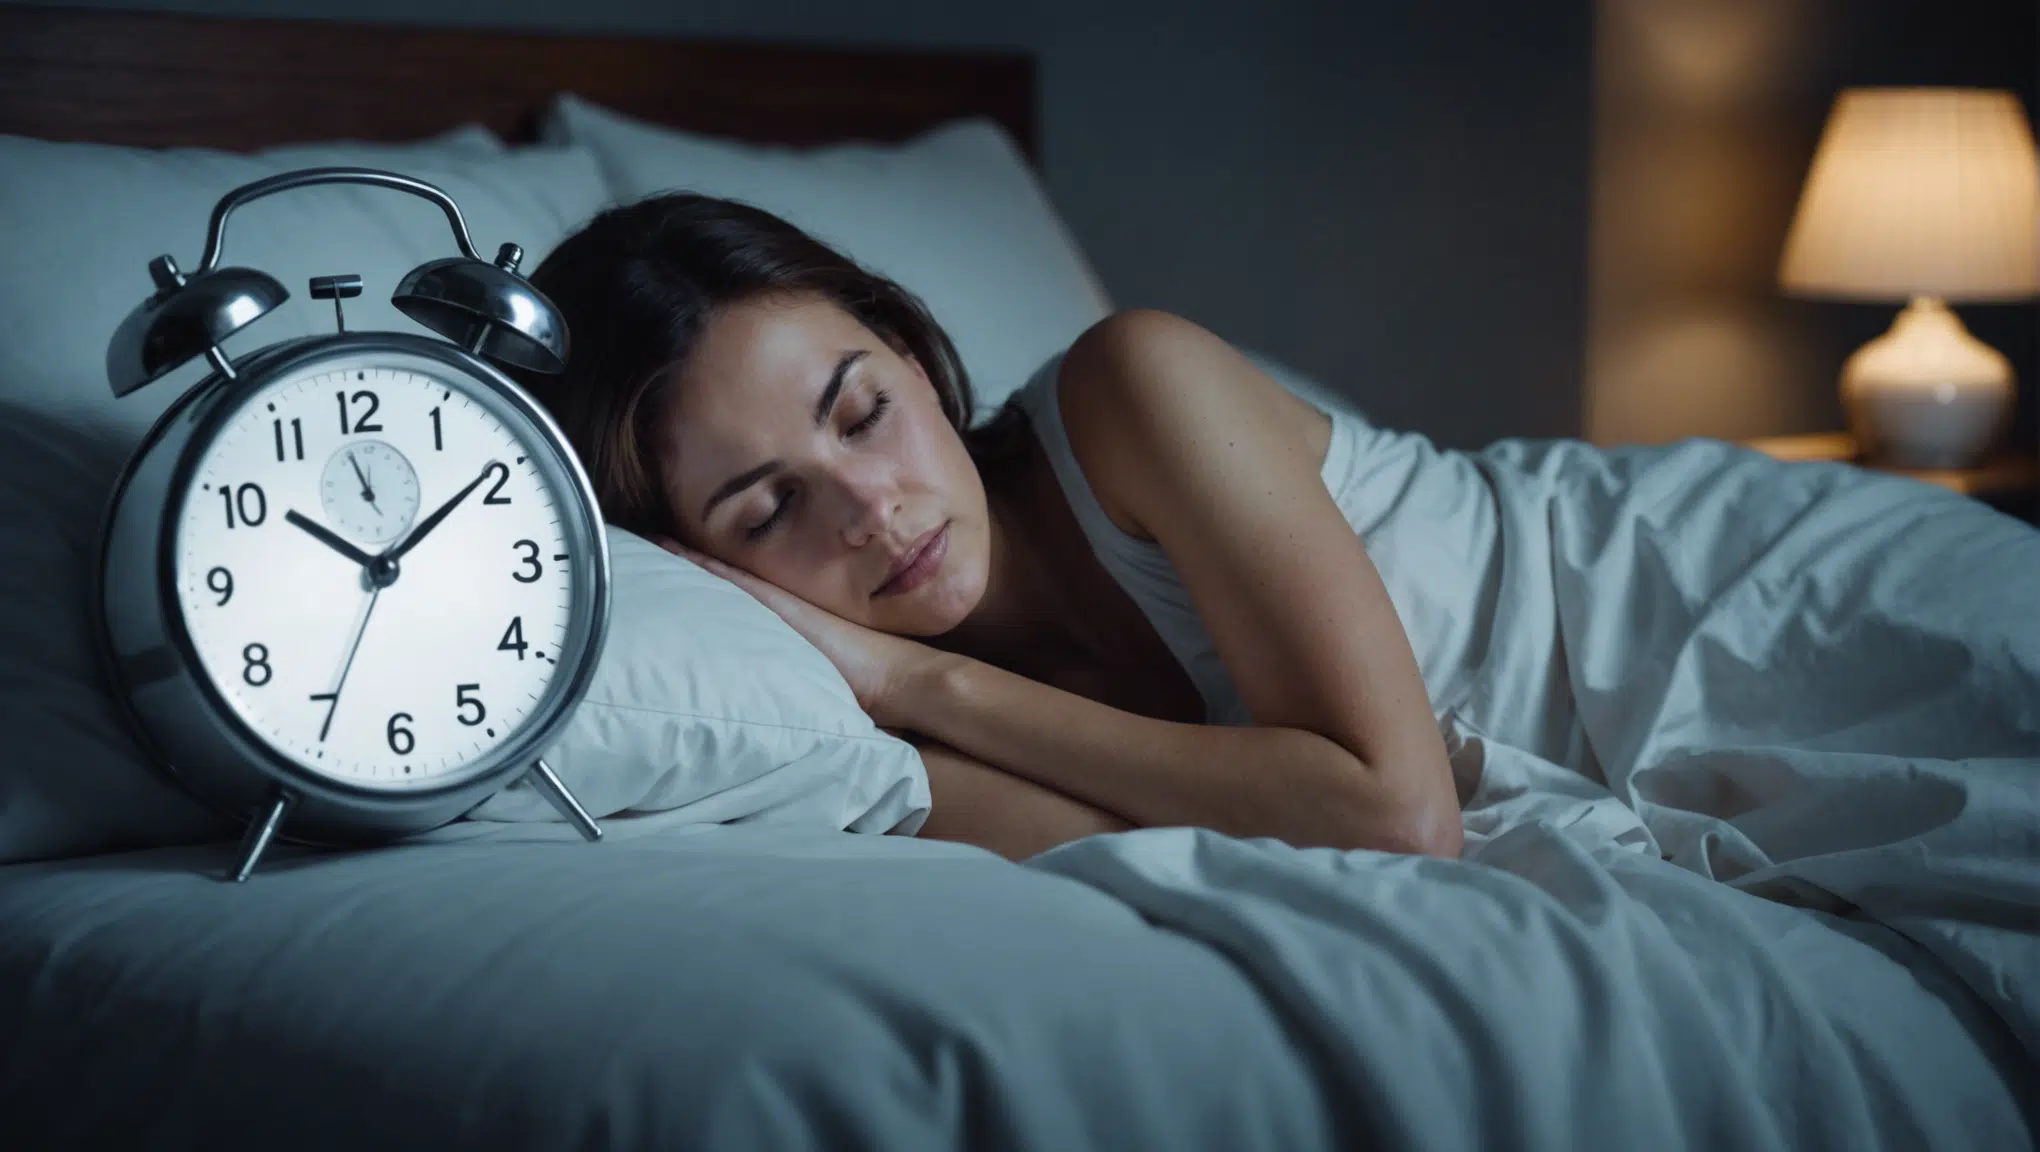 découvrez des conseils et astuces pour améliorer votre gestion du sommeil et retrouver des nuits plus reposantes. apprenez à mieux vous endormir et à gérer les troubles du sommeil.